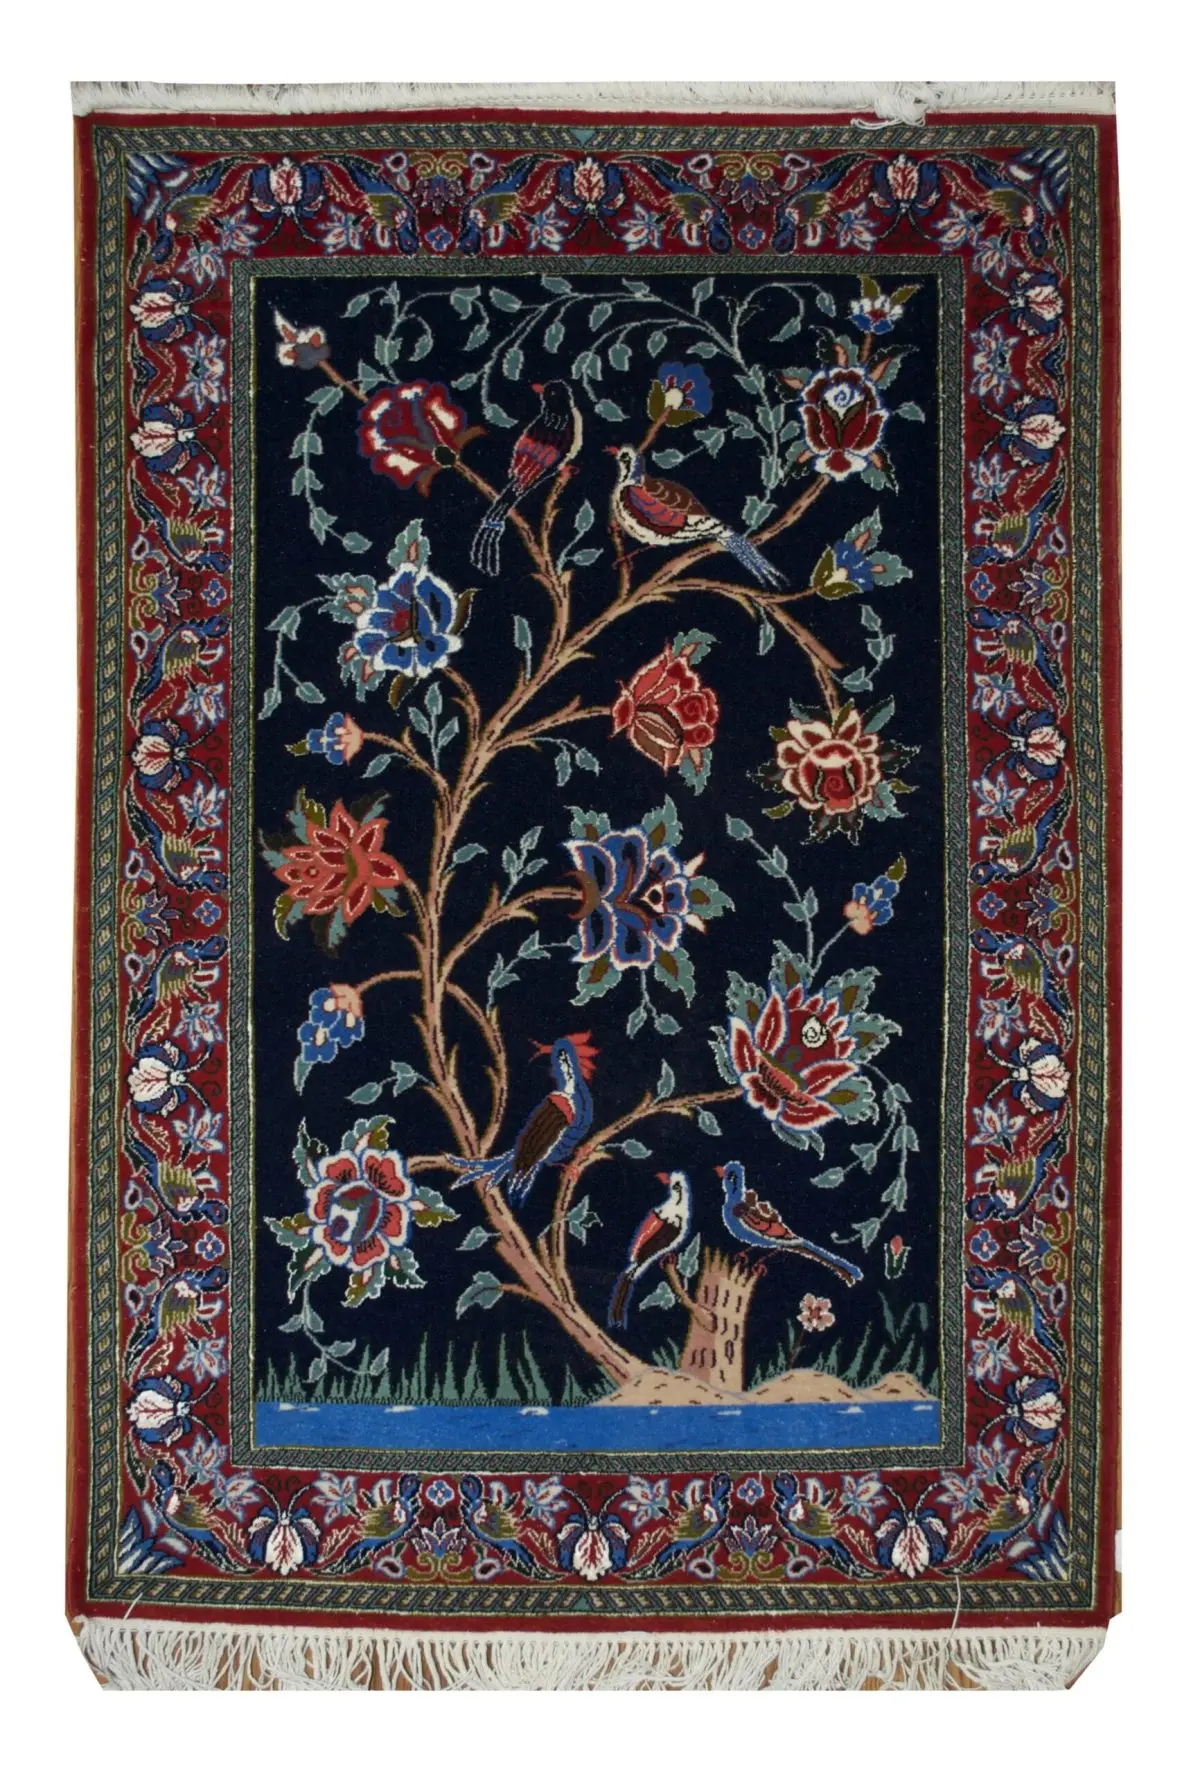 Persian Esfahan rug 2' 4" x 3' 5" - Shabahang Royal Carpet